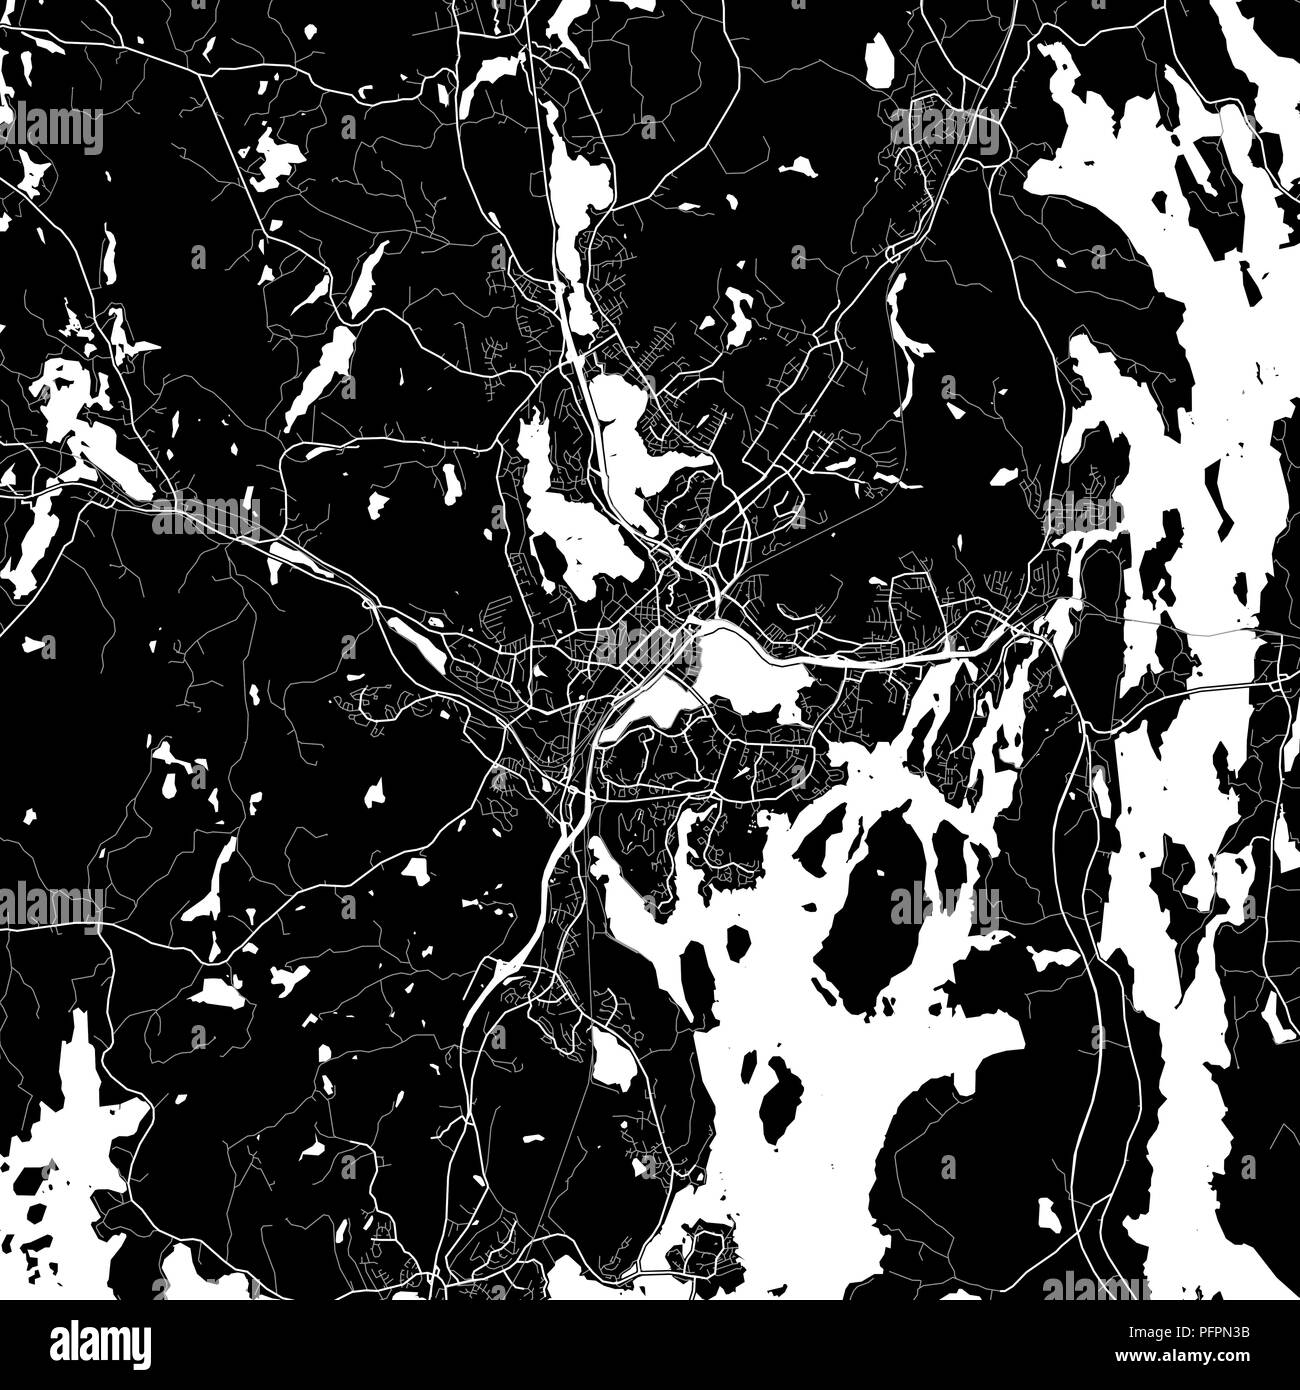 Lageplan von Jyväskylä, Finnland. Der dunkle Hintergrund Version für Infografik und Marketing Projekte. Diese Karte von Jyväskylä, enthält typische Sehenswürdigkeiten mit Stock Vektor